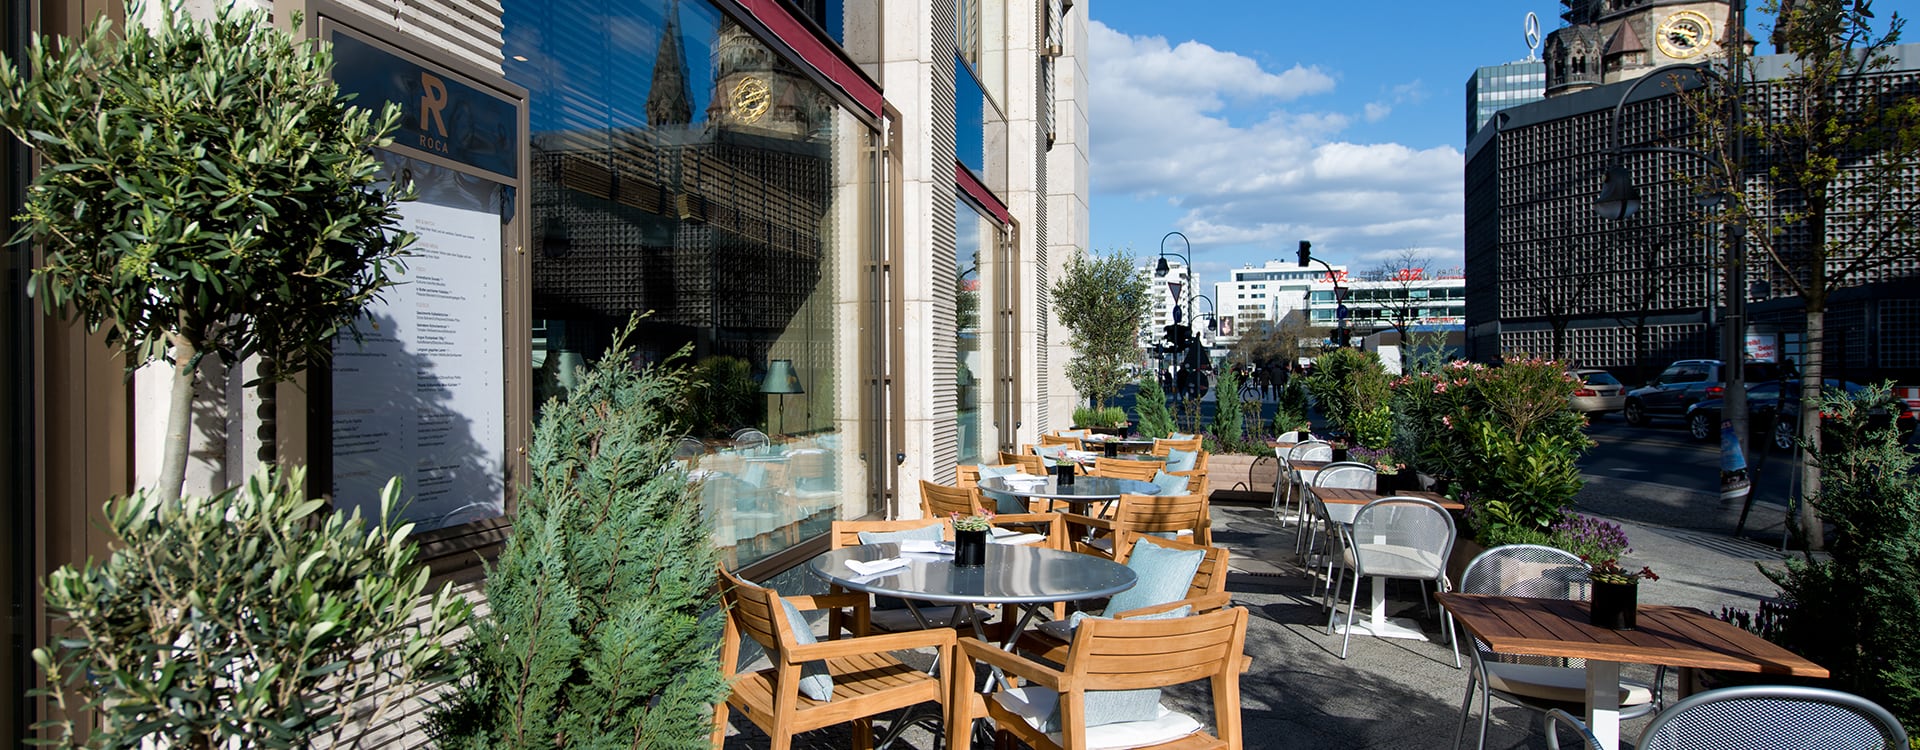 Restaurant Roca mit Terrasse und Blick auf die Kaiser-Wilhelm-Gedächtniskirche Berlin